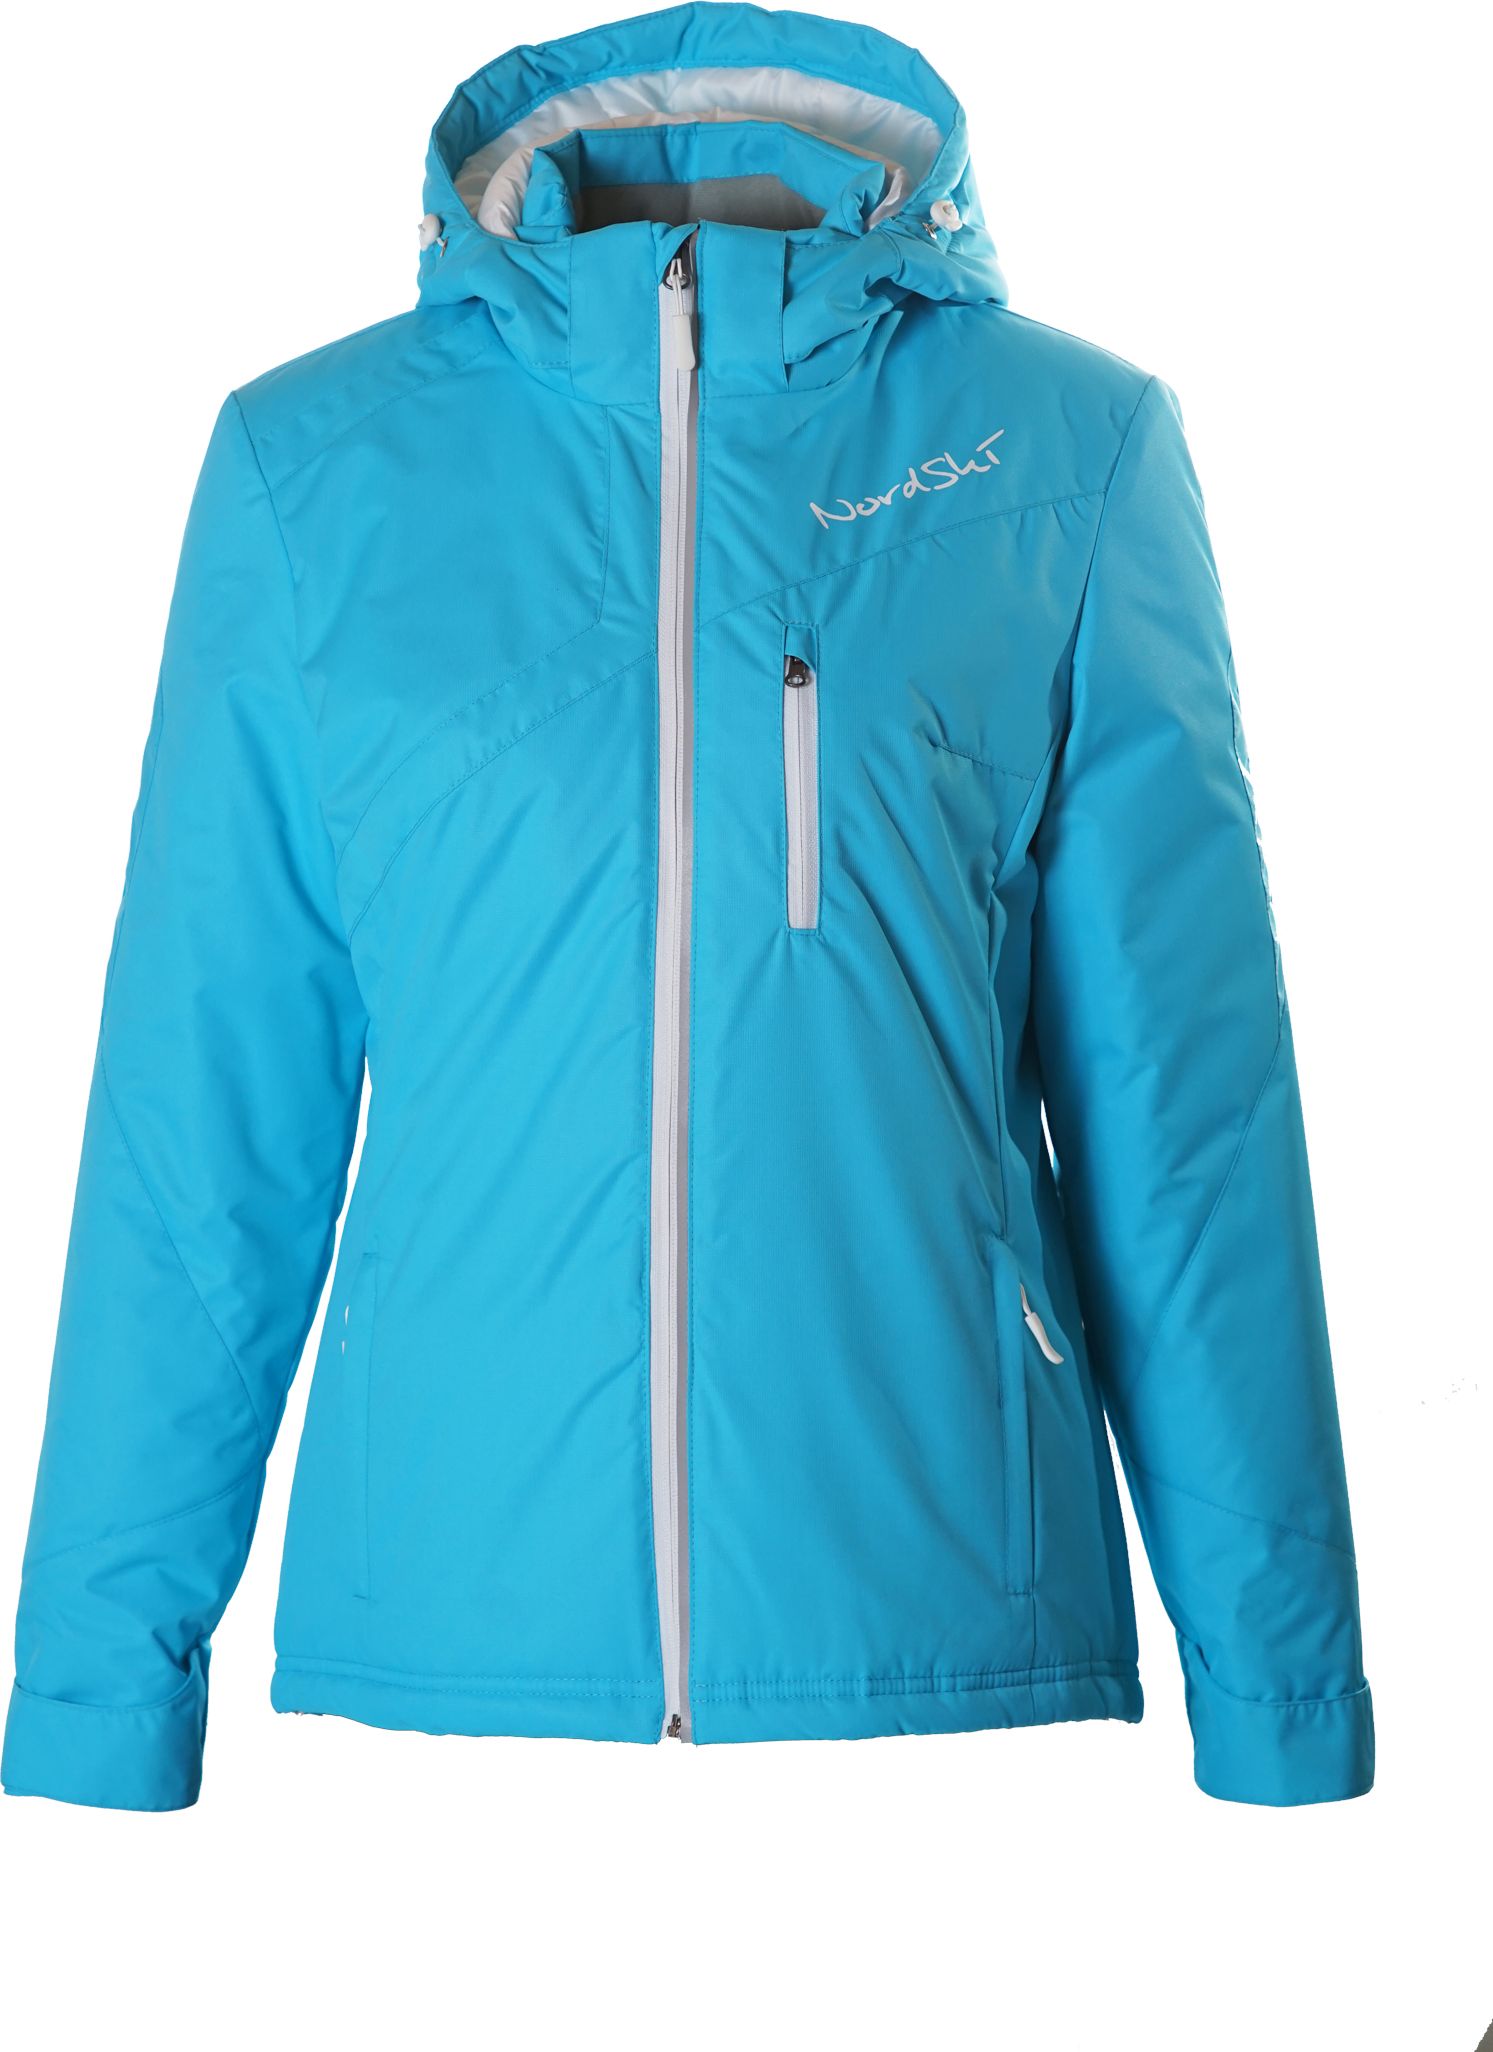 Спортмастер интернет магазин женской. Нордски премиум куртка. Куртка Nordski Premium Active. Лыжная утеплённая куртка нордски. Голубой лыжный костюм женский в спортмастере.